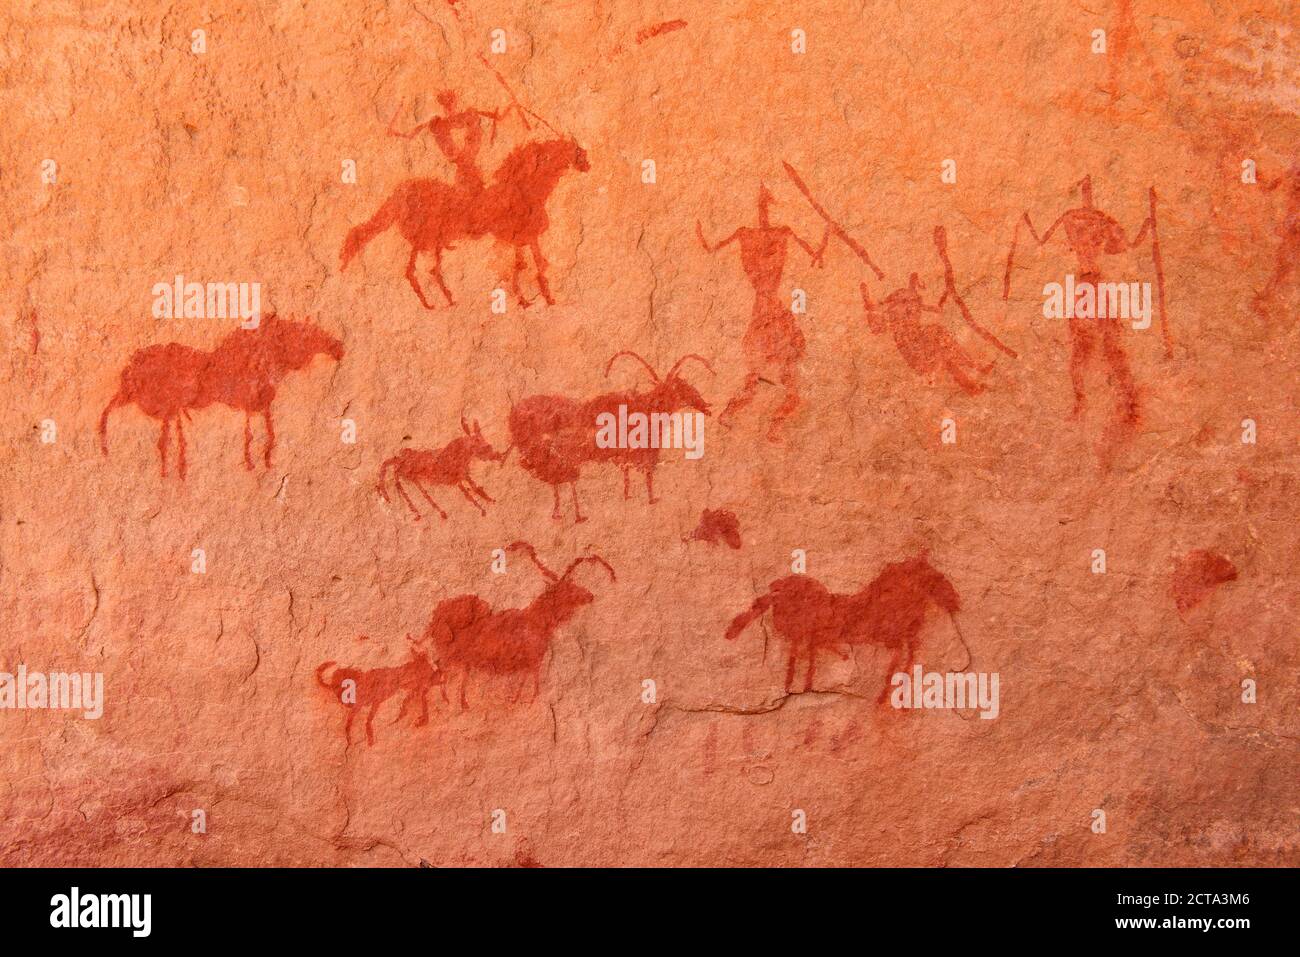 Afrique du Nord, Sahara, Algérie, Parc national de Tassili n'Ajjer, Tadrart, art rupestre néolithique, peinture rock de chevaux, cavaliers et chèvres Banque D'Images